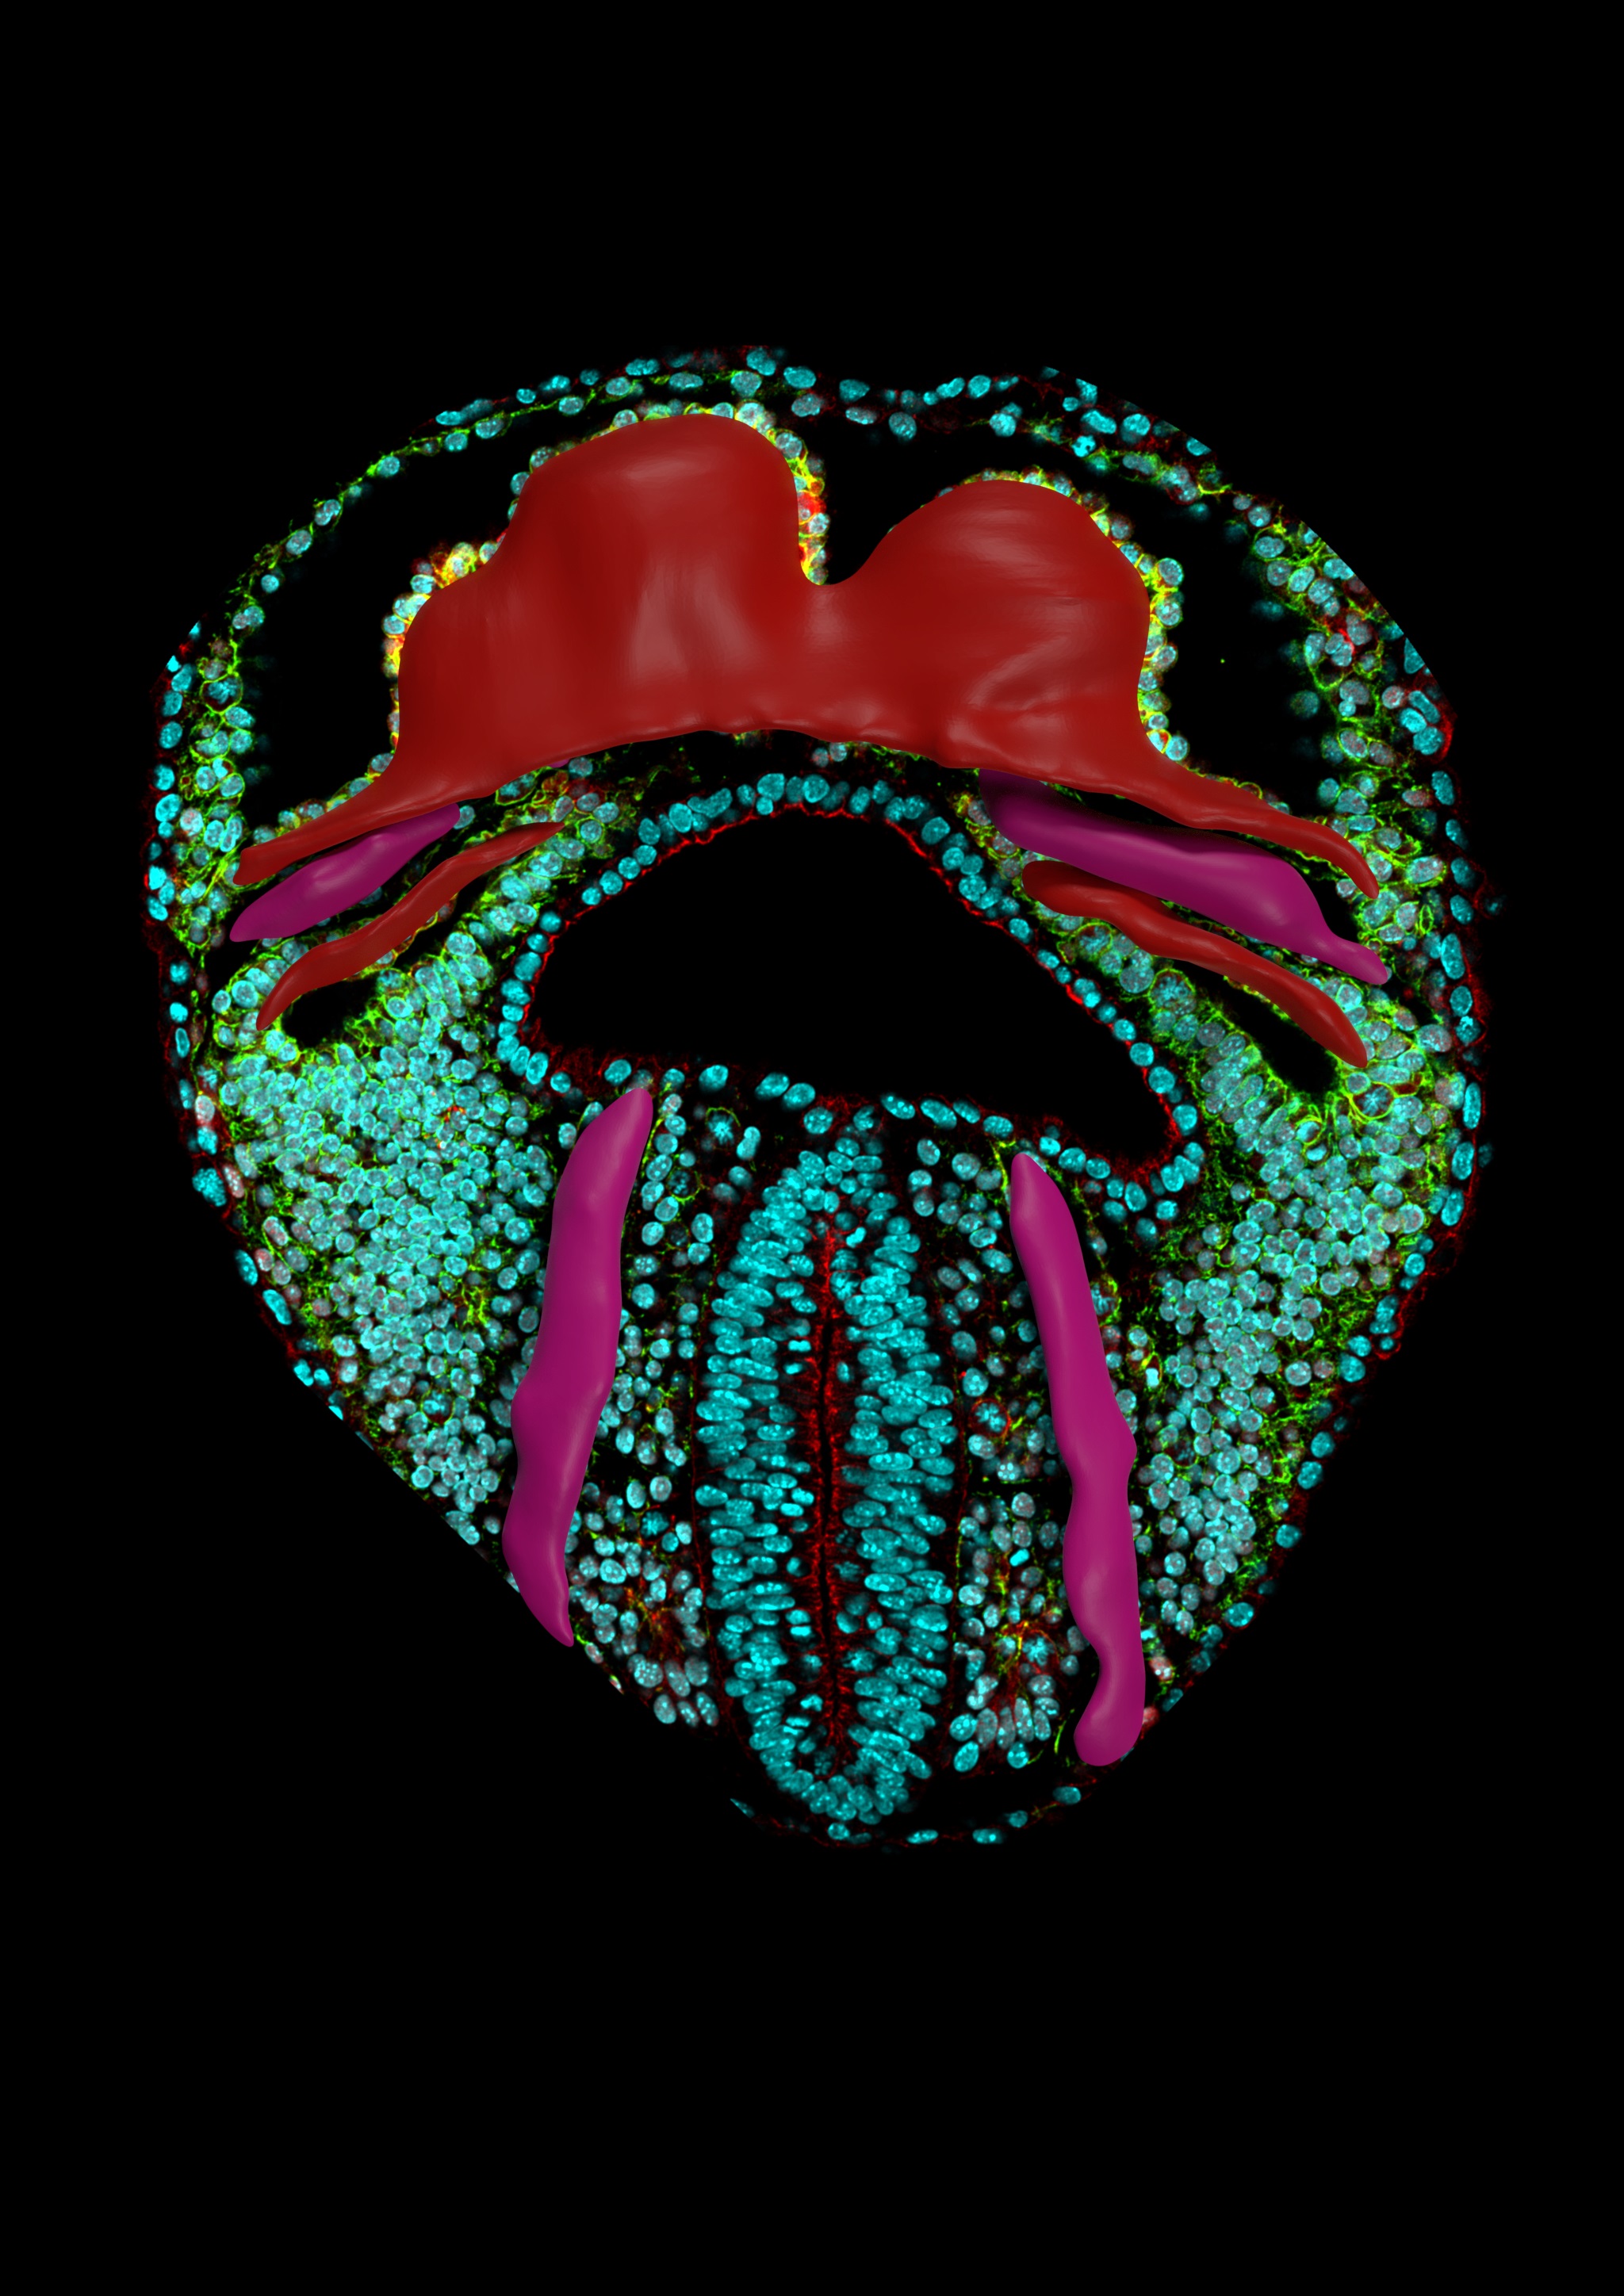 Imagen que muestra una sección óptica de una vista ventral de un embrión de ratón. Se puede ver la forma tridimensional del corazón en formación (rojo) y el sistema circulatorio incipiente (púrpura).